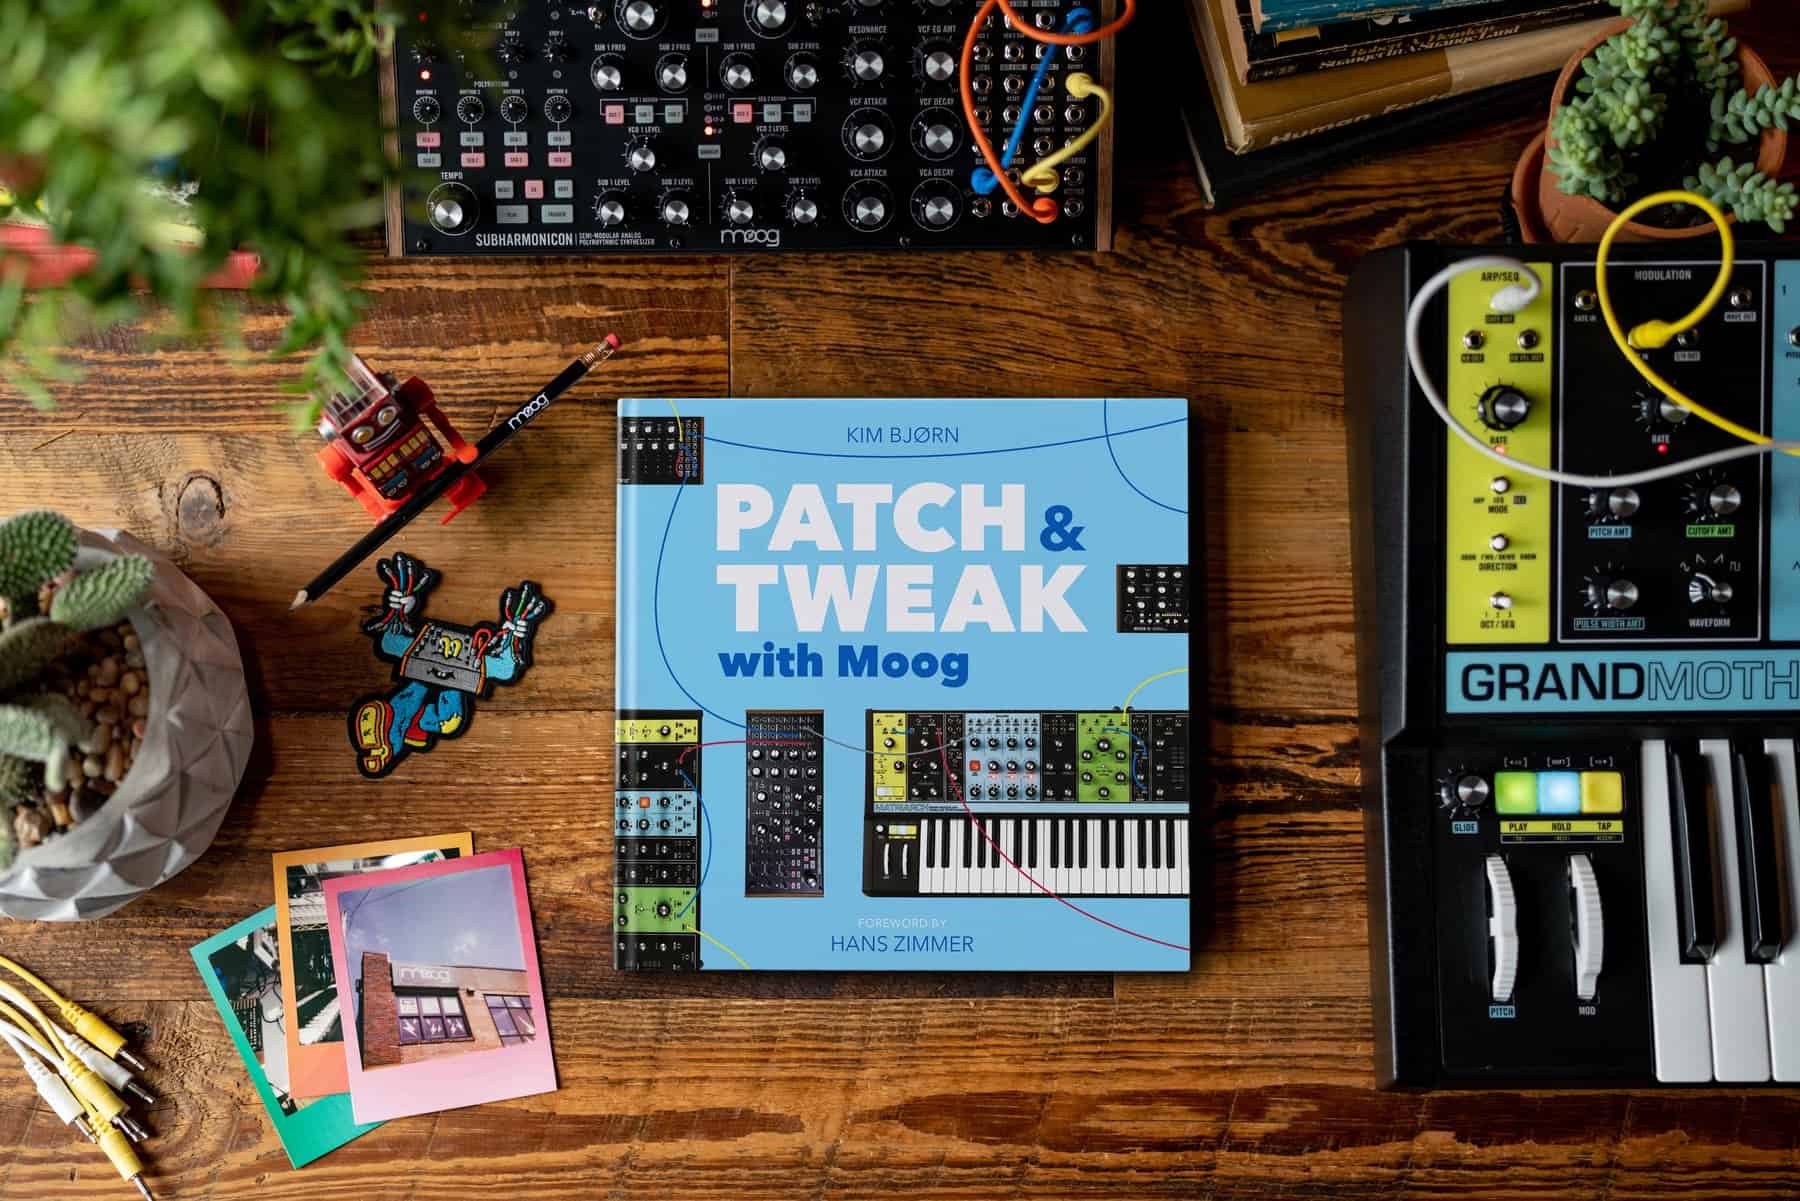 PATCH & TWEAK with Moog Pre-order